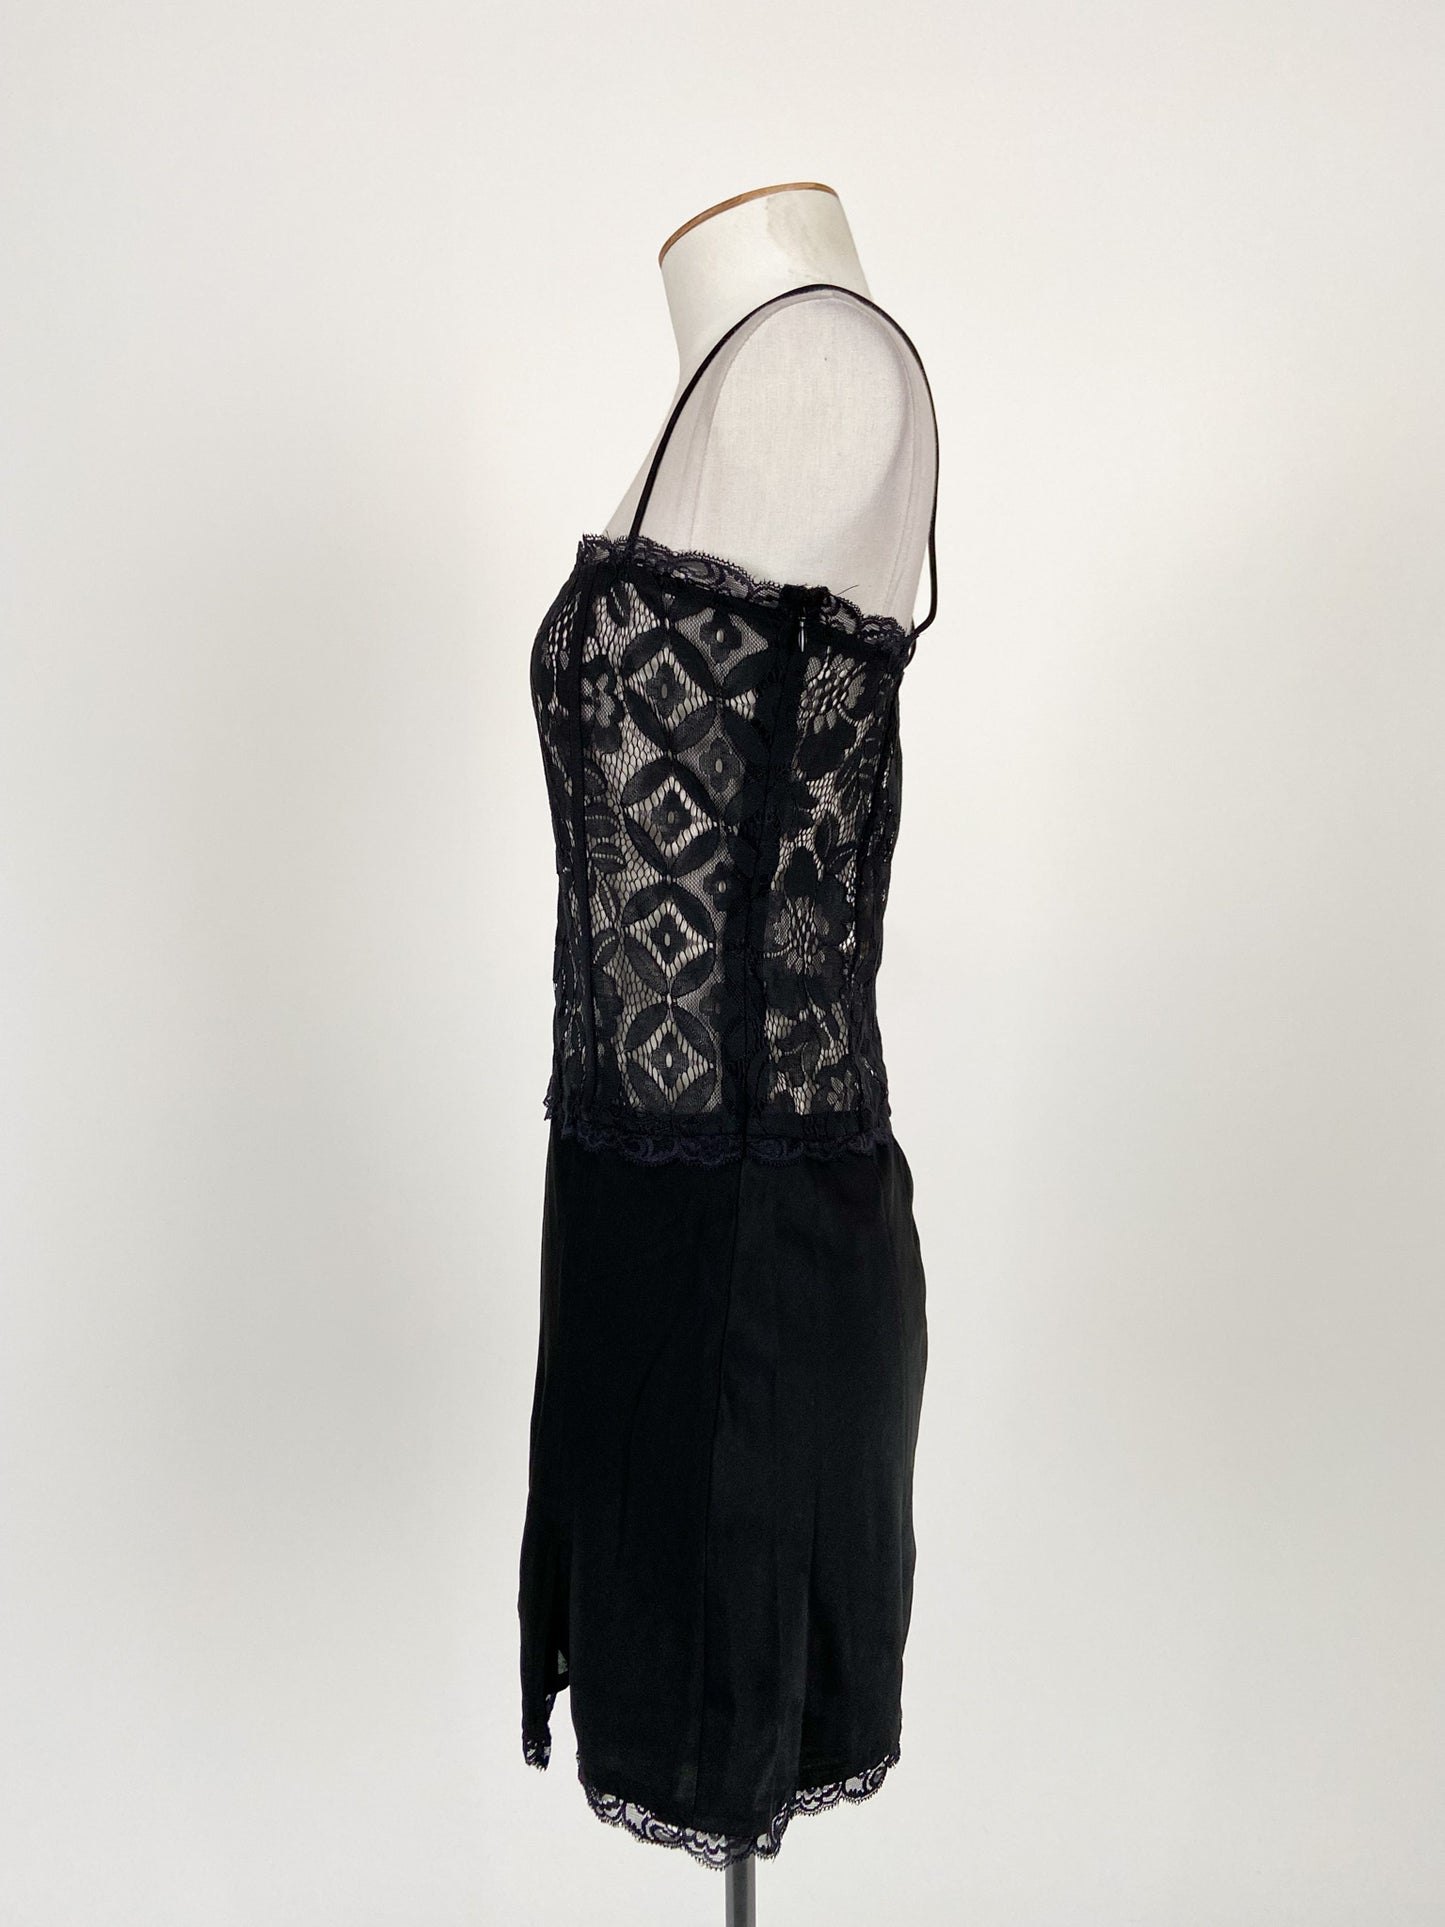 Meshki | Black Cocktail/Lingerie Dress | Size S